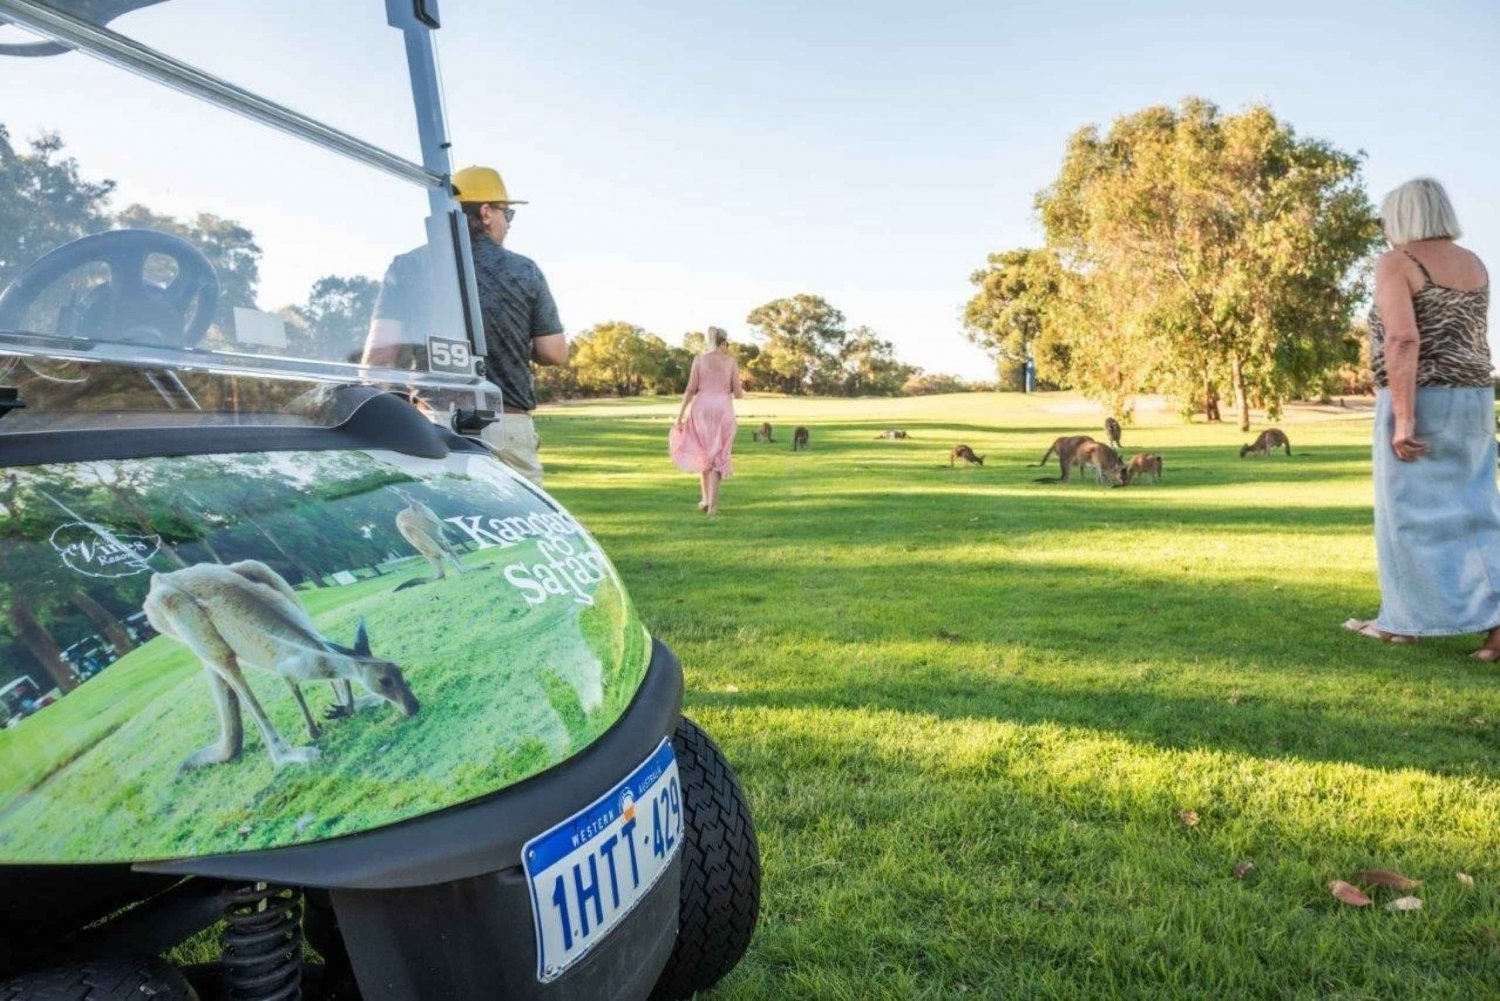 Swan Valley: Safári de canguru com carrinho de golfe, minigolfe e bebida